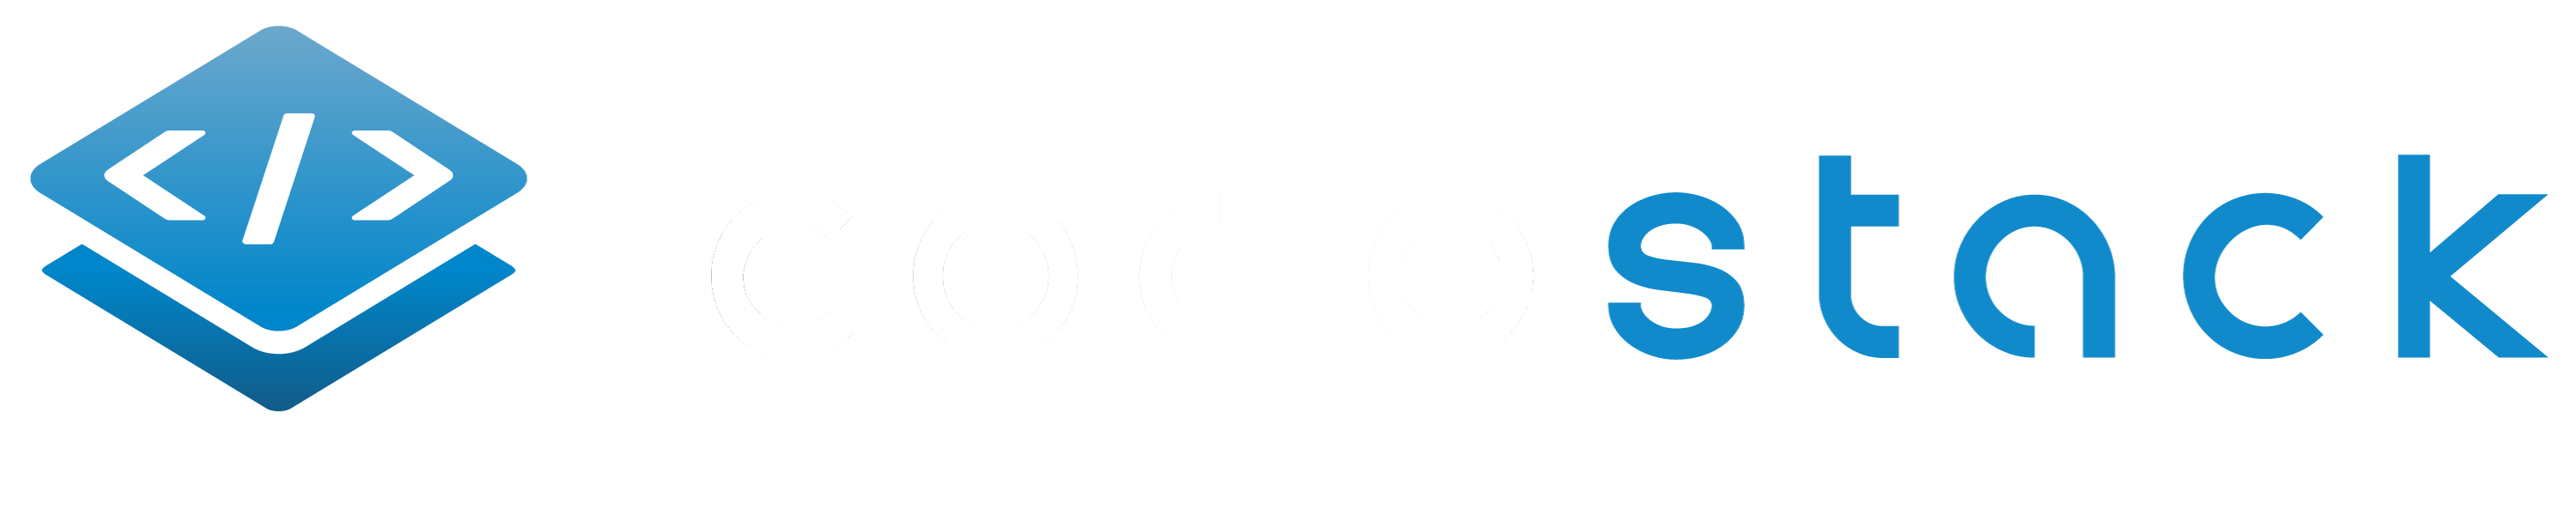 Codestack Logo